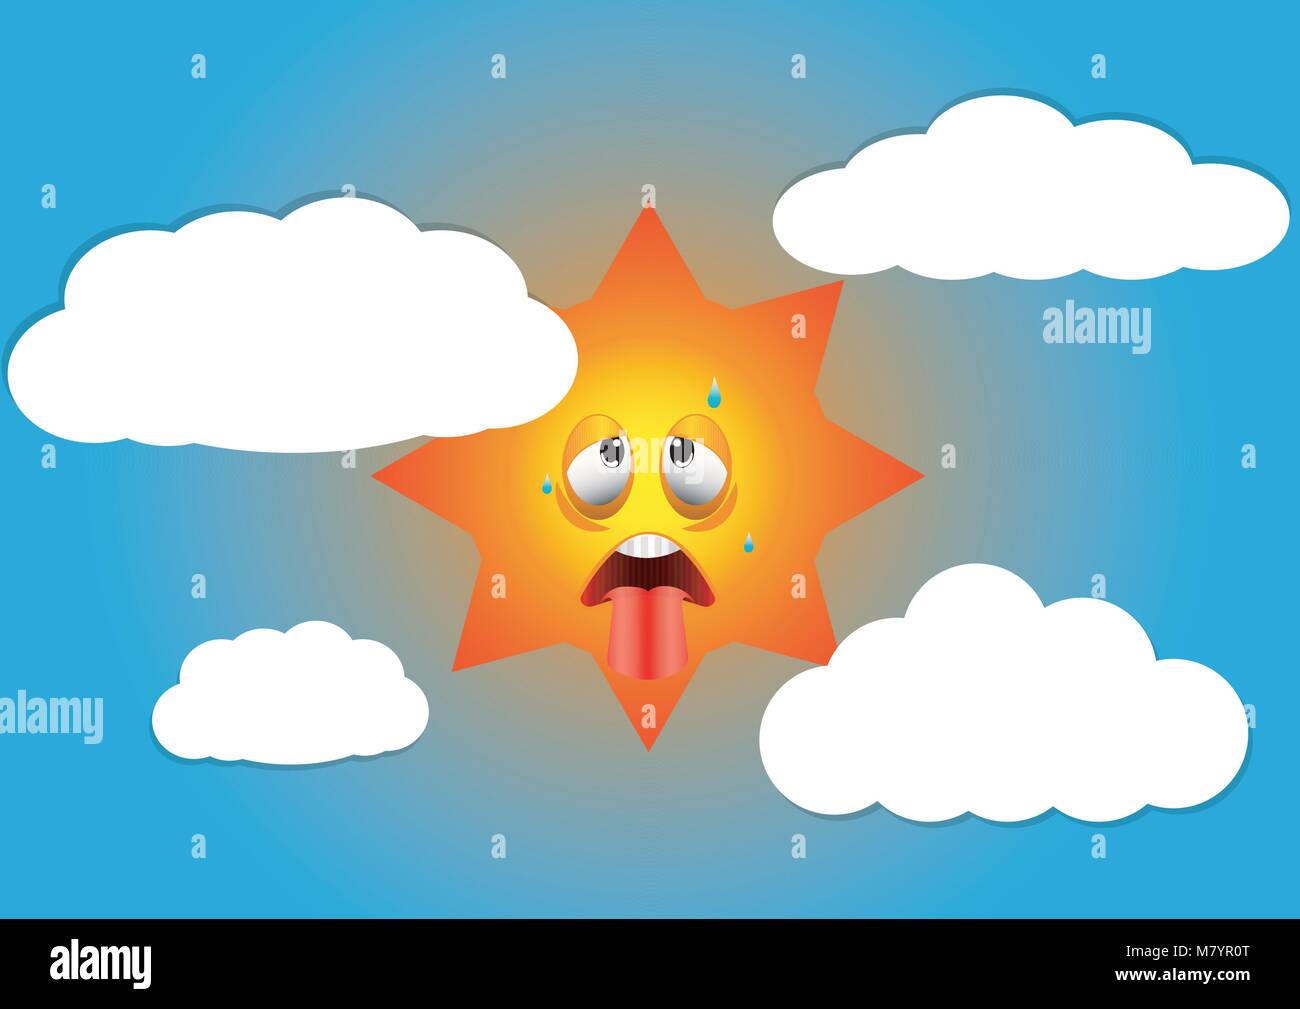 design vector of illustration hot summer season Stock Vector